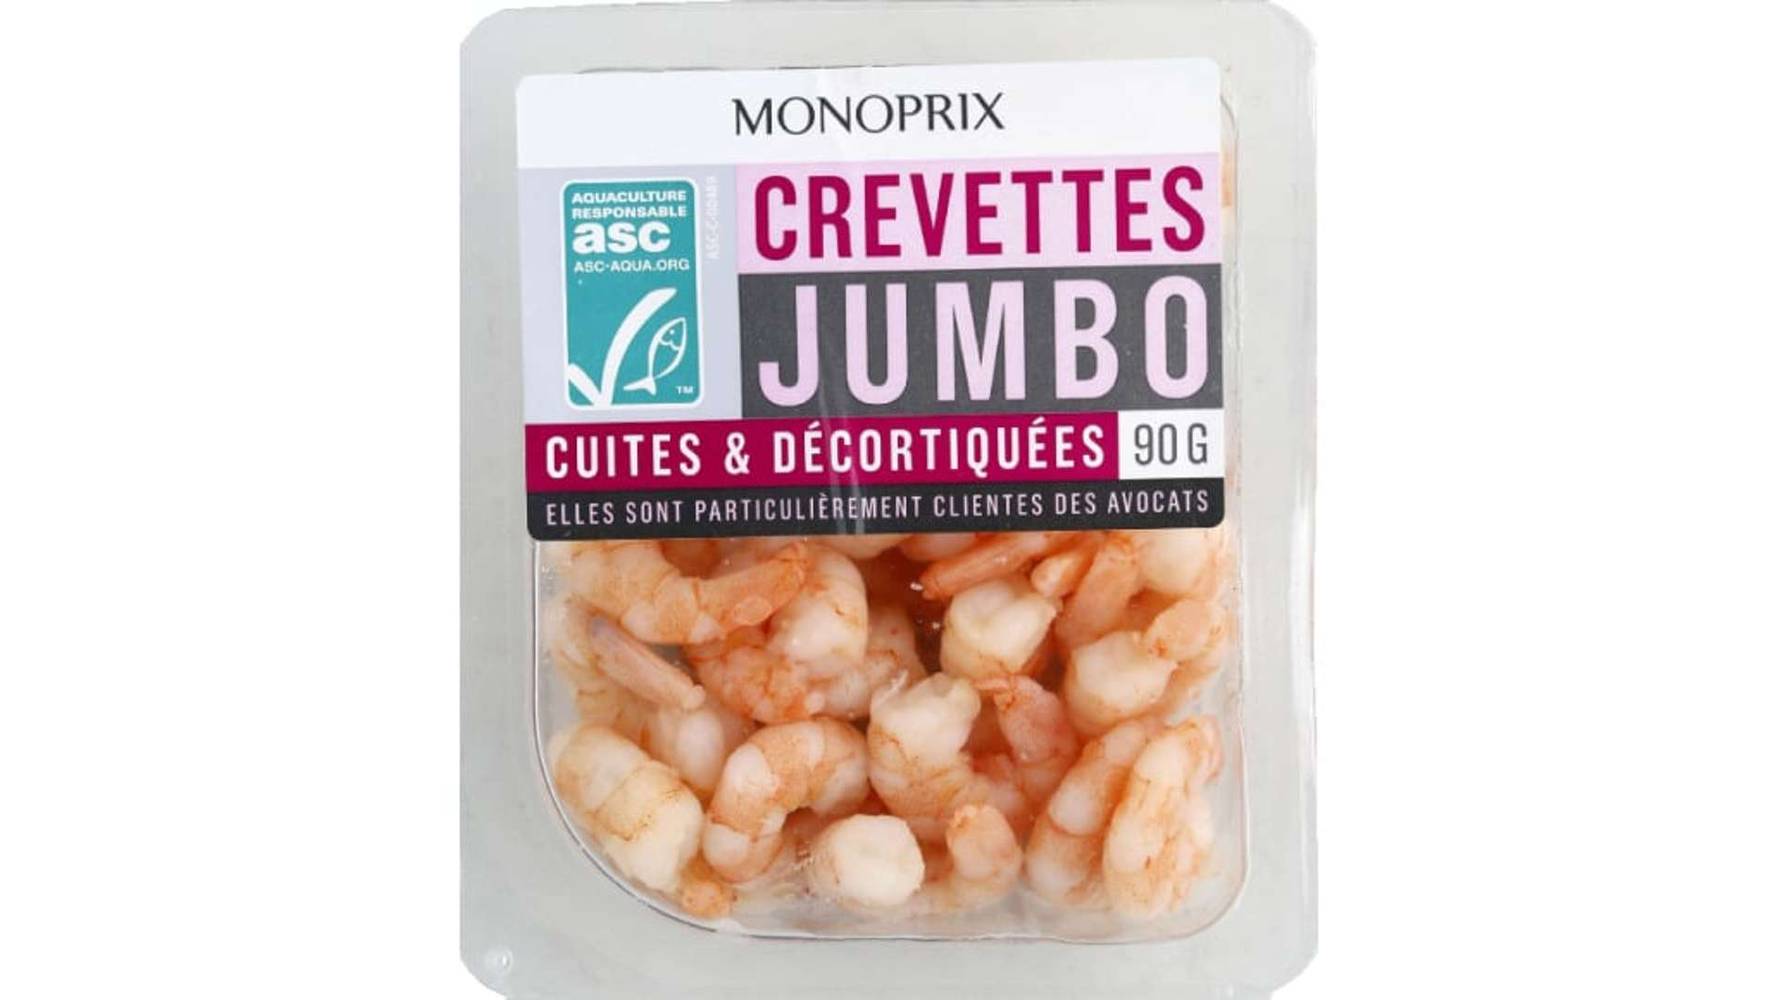 Monoprix - Crevettes jumbo cuites & décortiquées